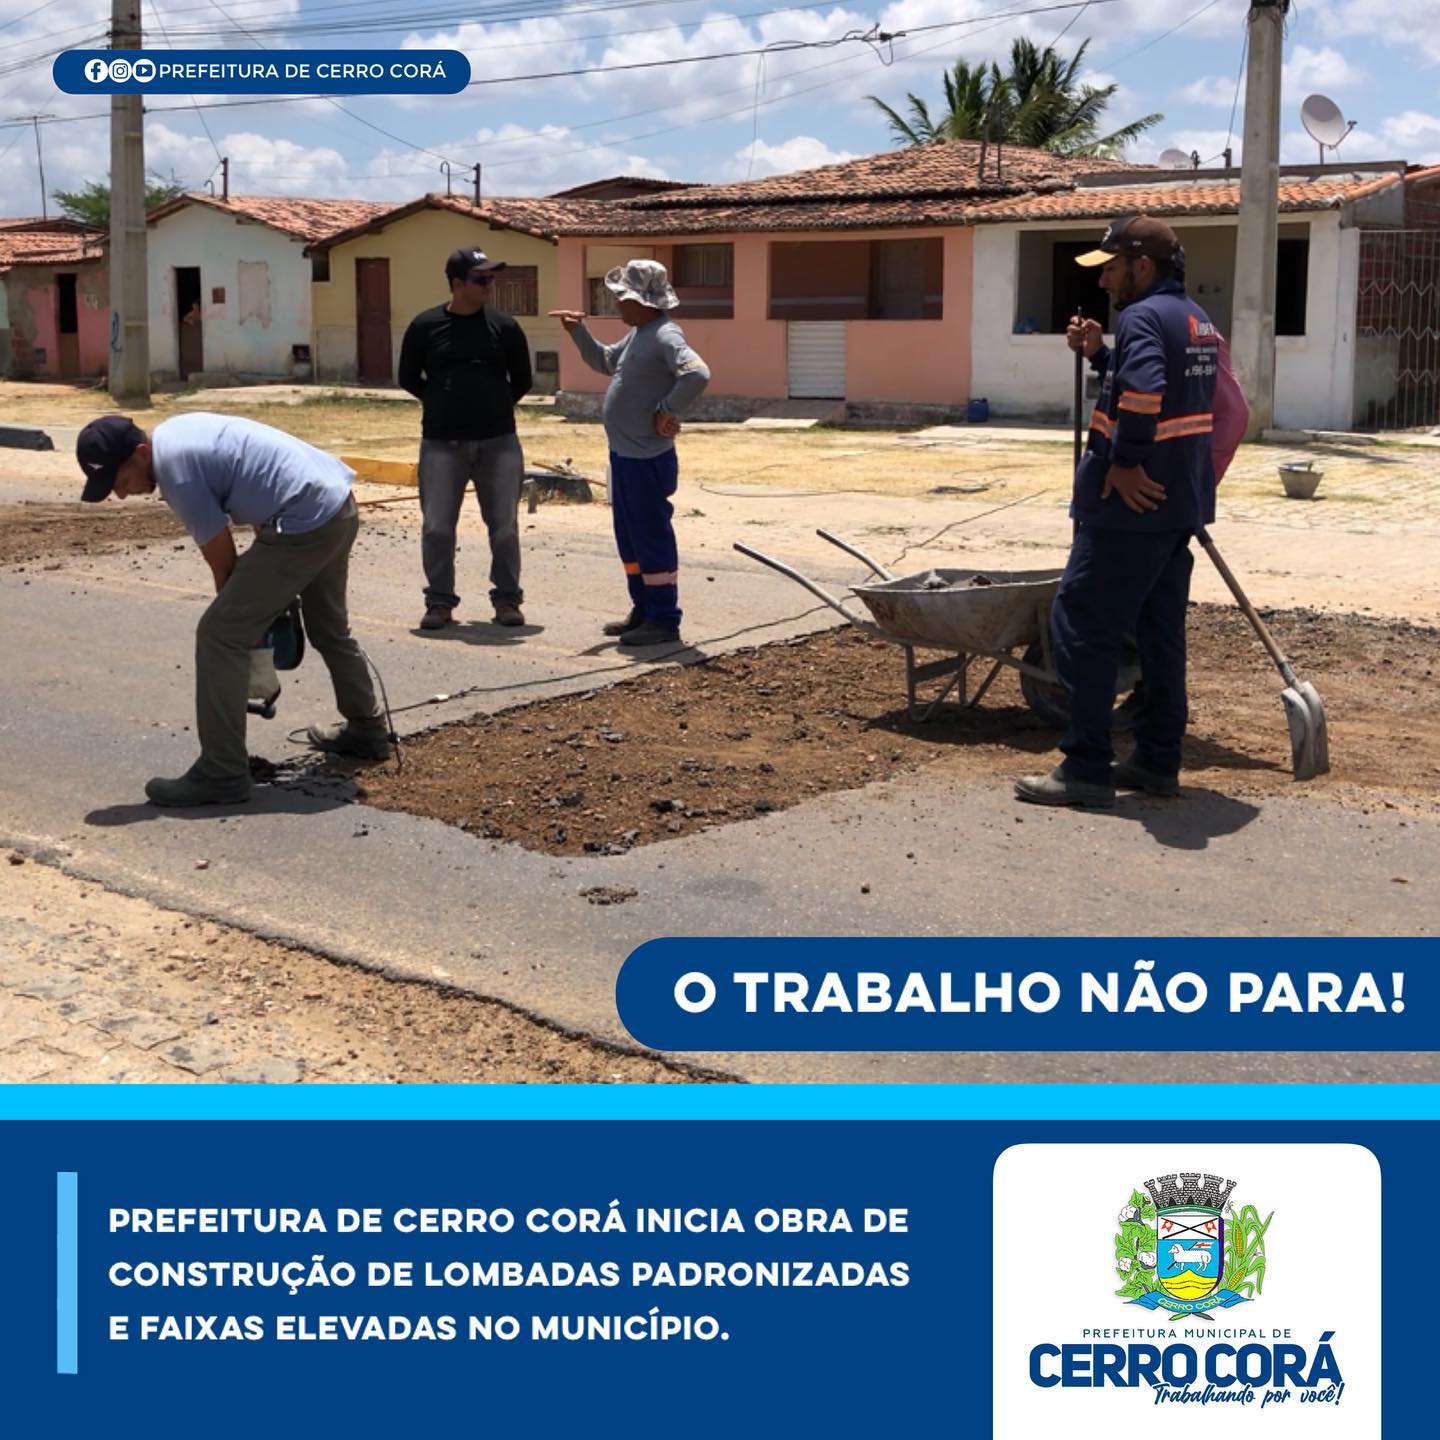 Prefeitura de Cerro Corá realiza serviços e ações programadas no município